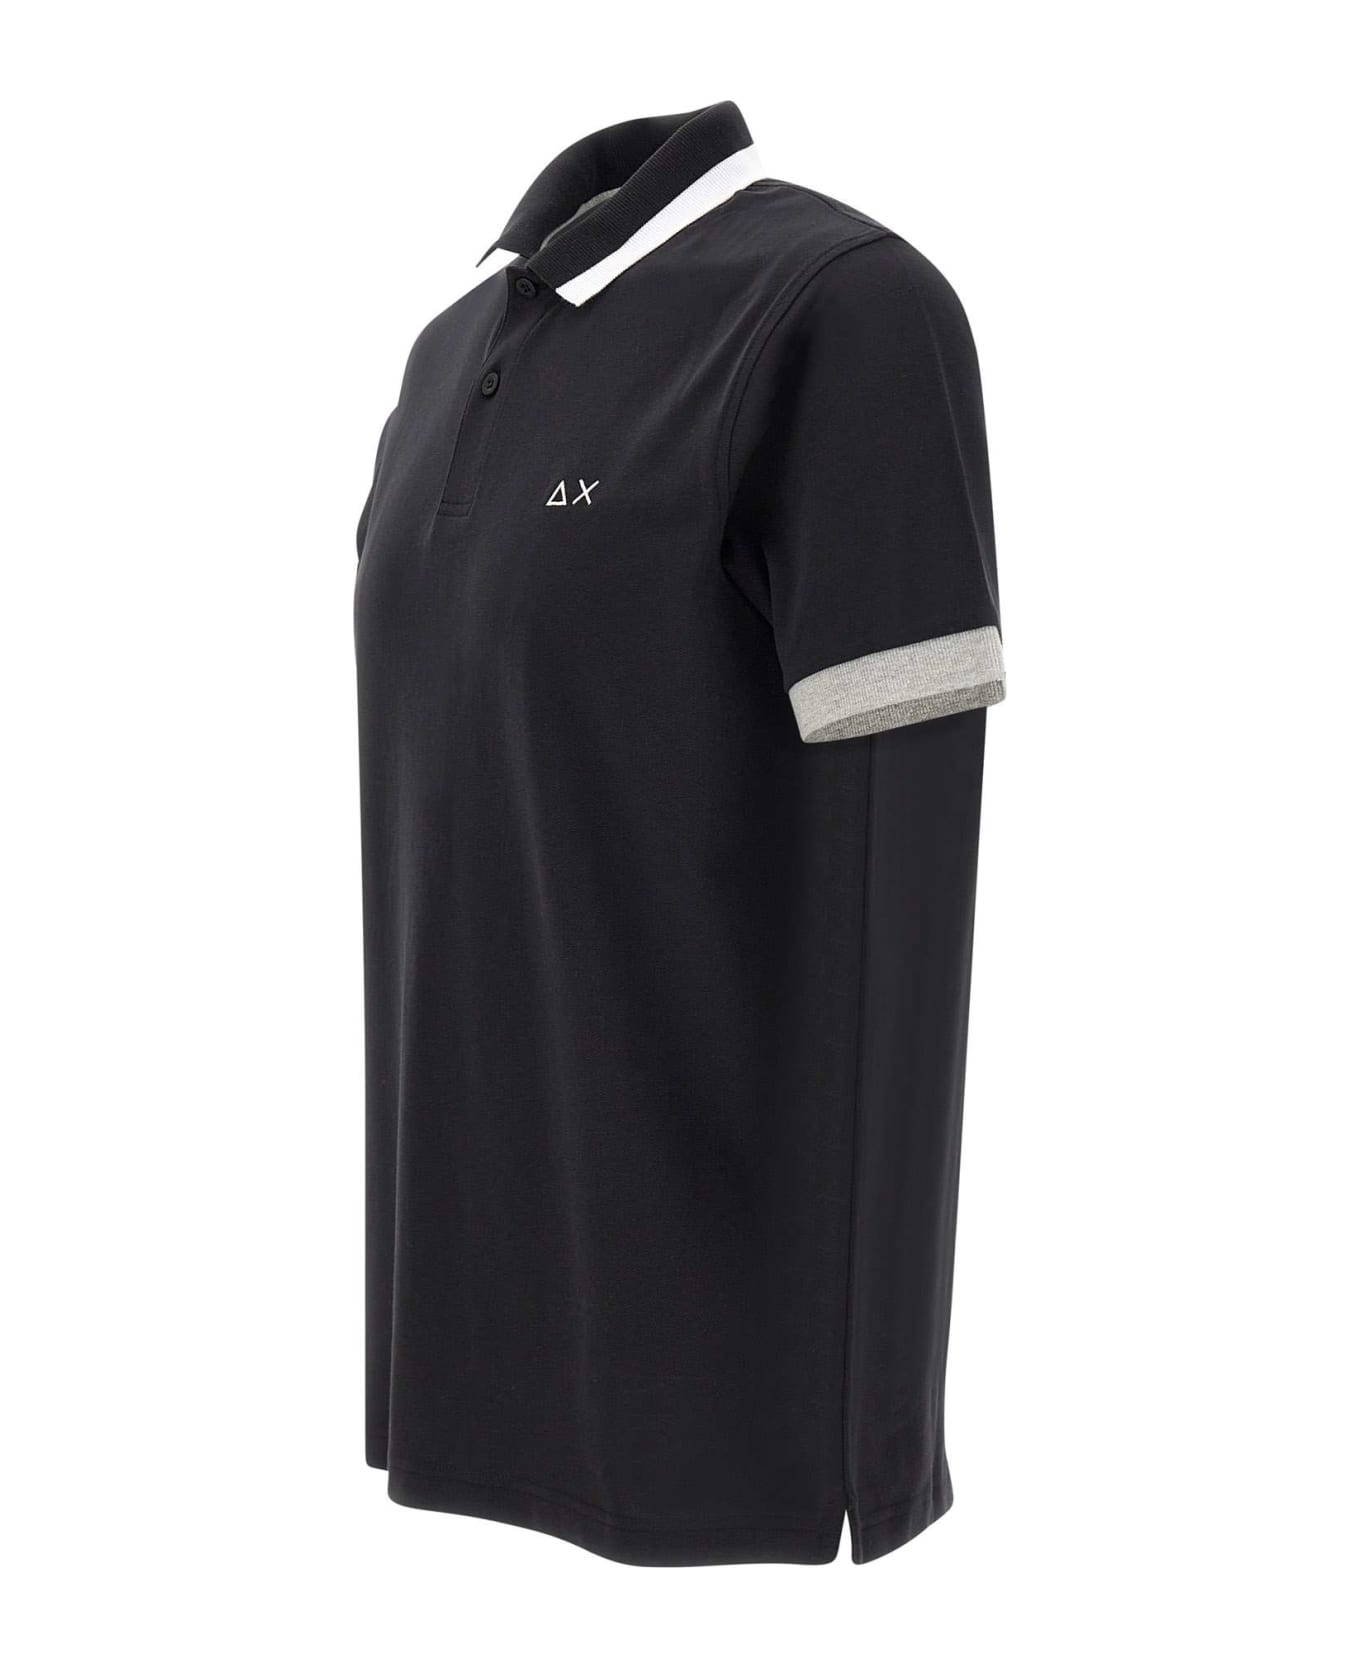 Sun 68 "big Stripe" Cotton Polo Shirt - BLACK ポロシャツ